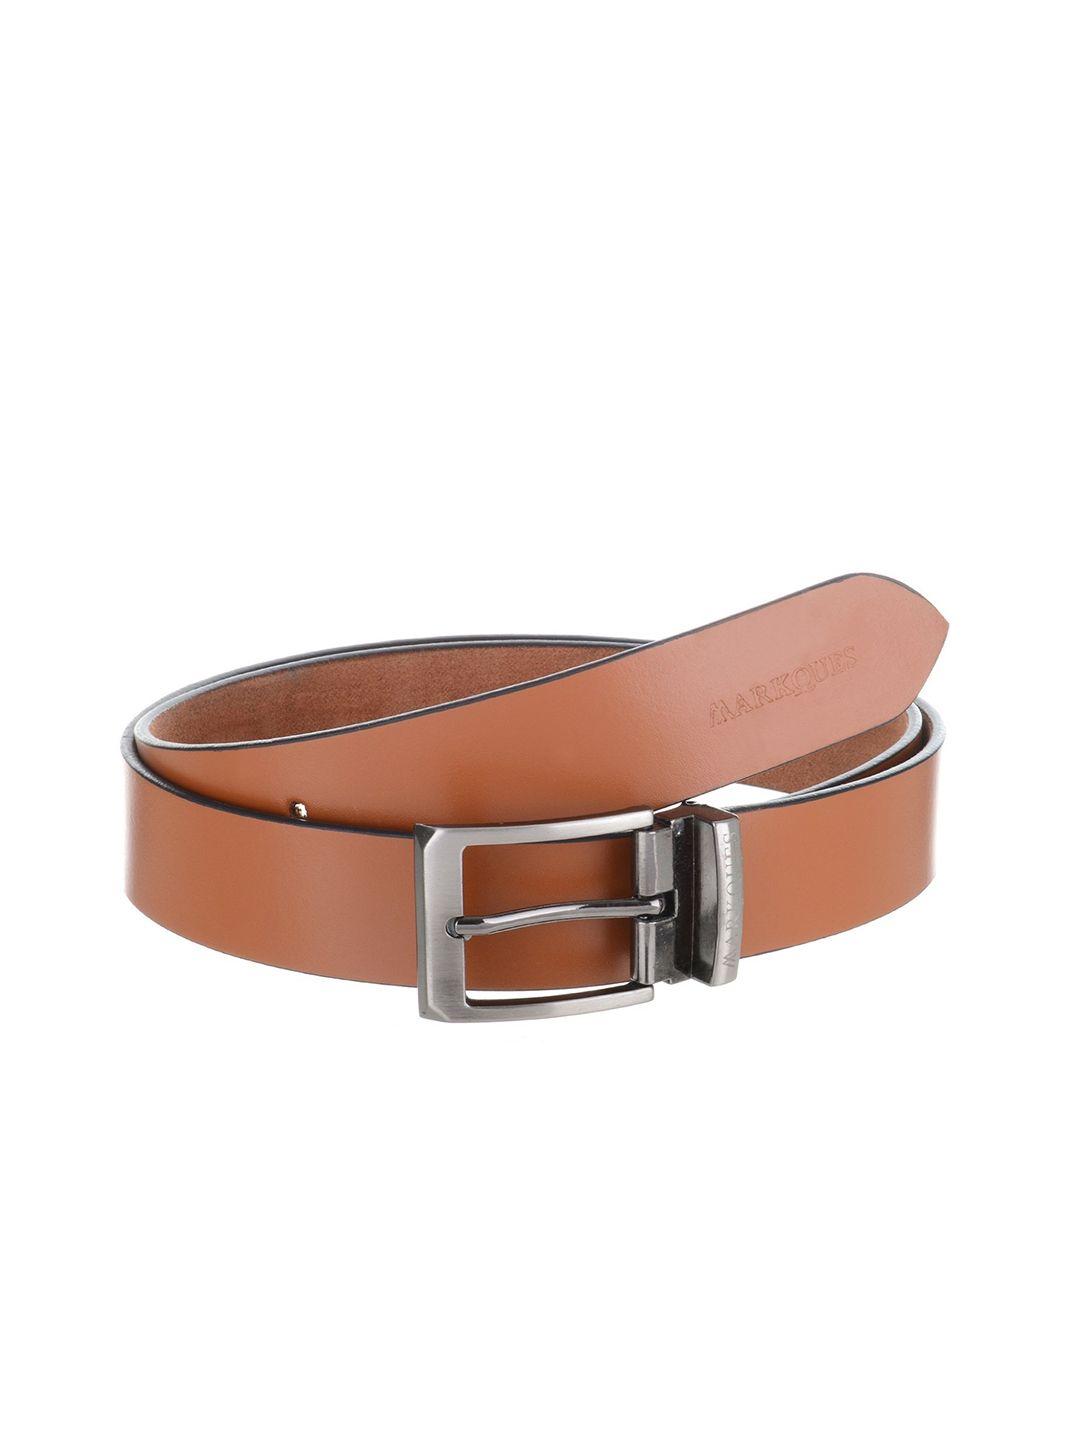 markques men genuine leather belt